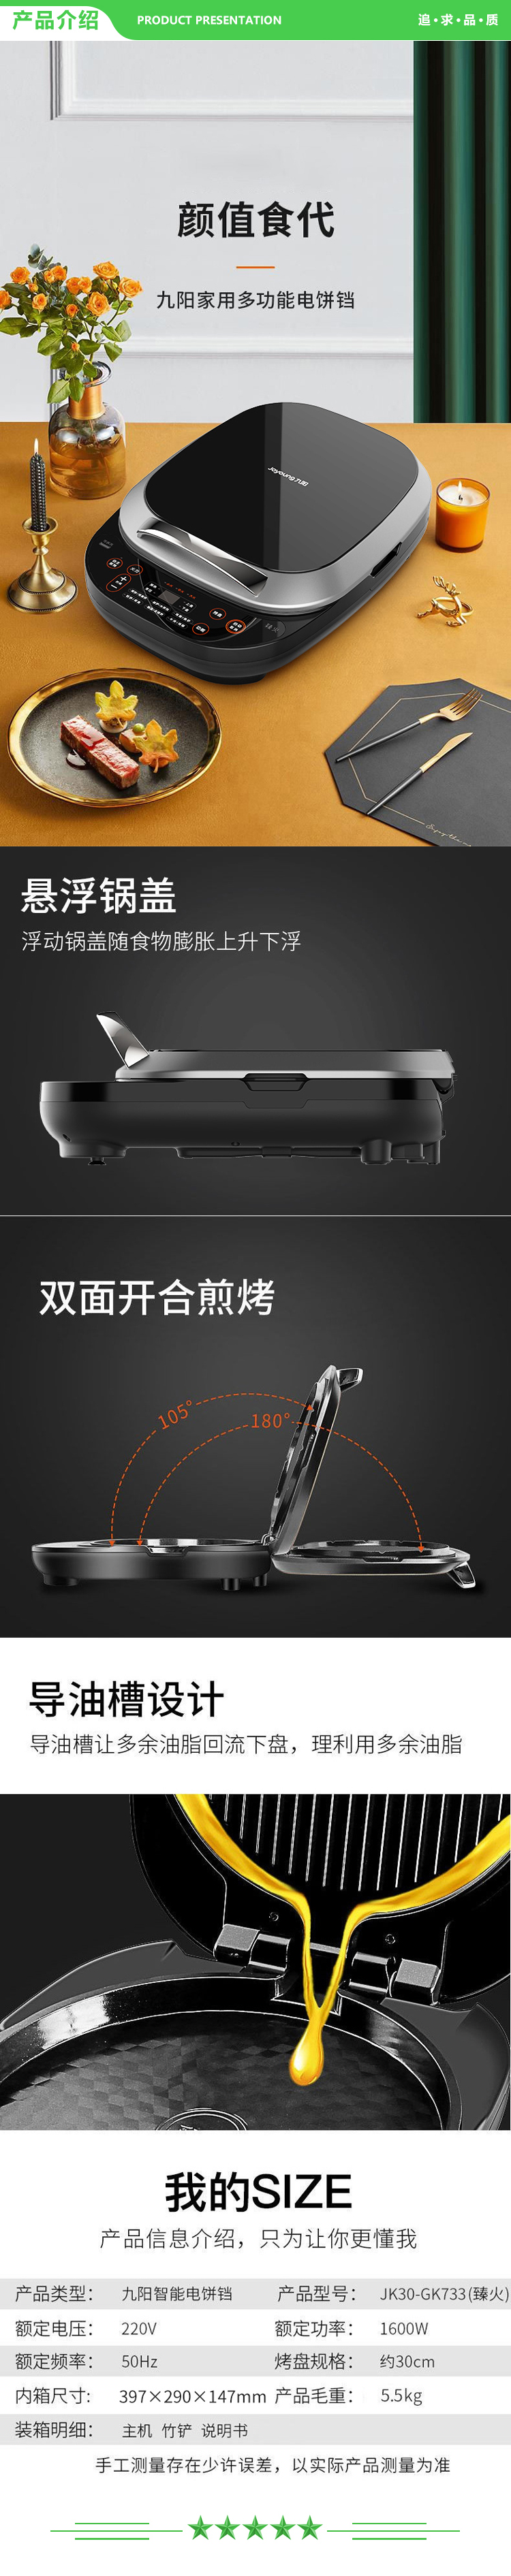 九阳 Joyoung JK30-GK732 电饼铛 煎烤机烙饼机悬浮式双面煎烤电煎锅烤肉.jpg